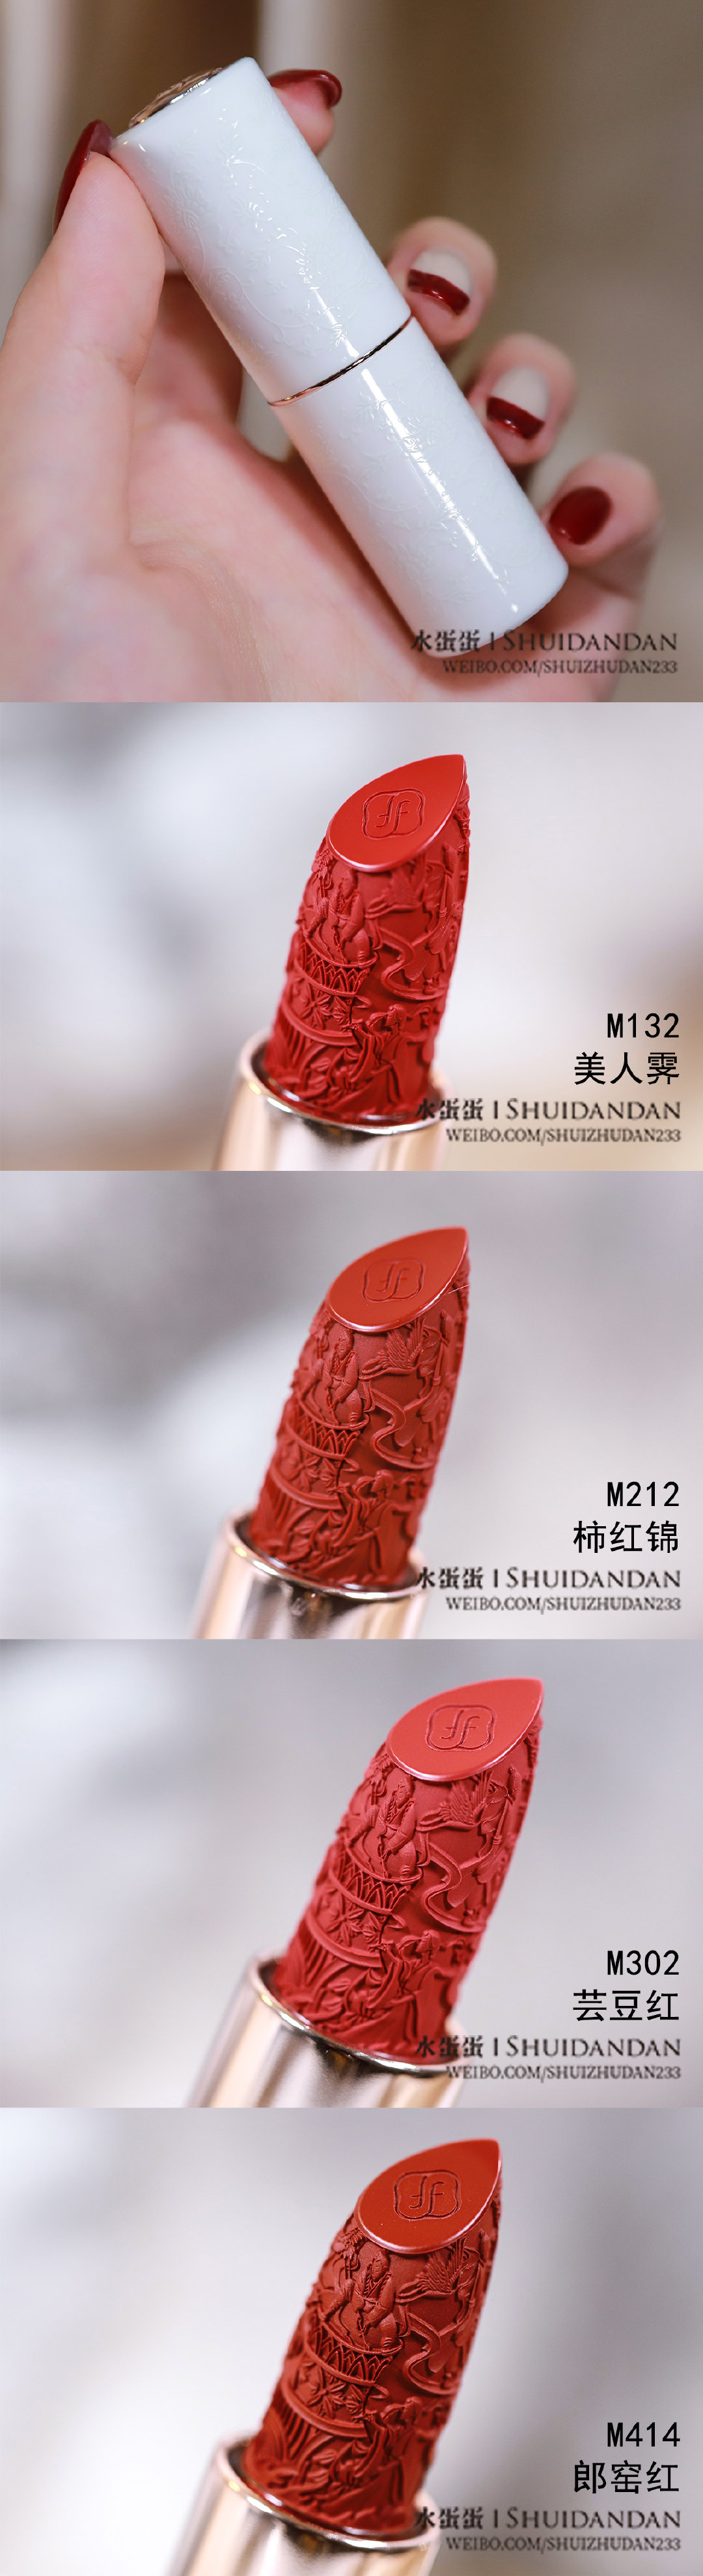 花西子花露玲珑陶瓷口红M132/M212/M302/M414试色